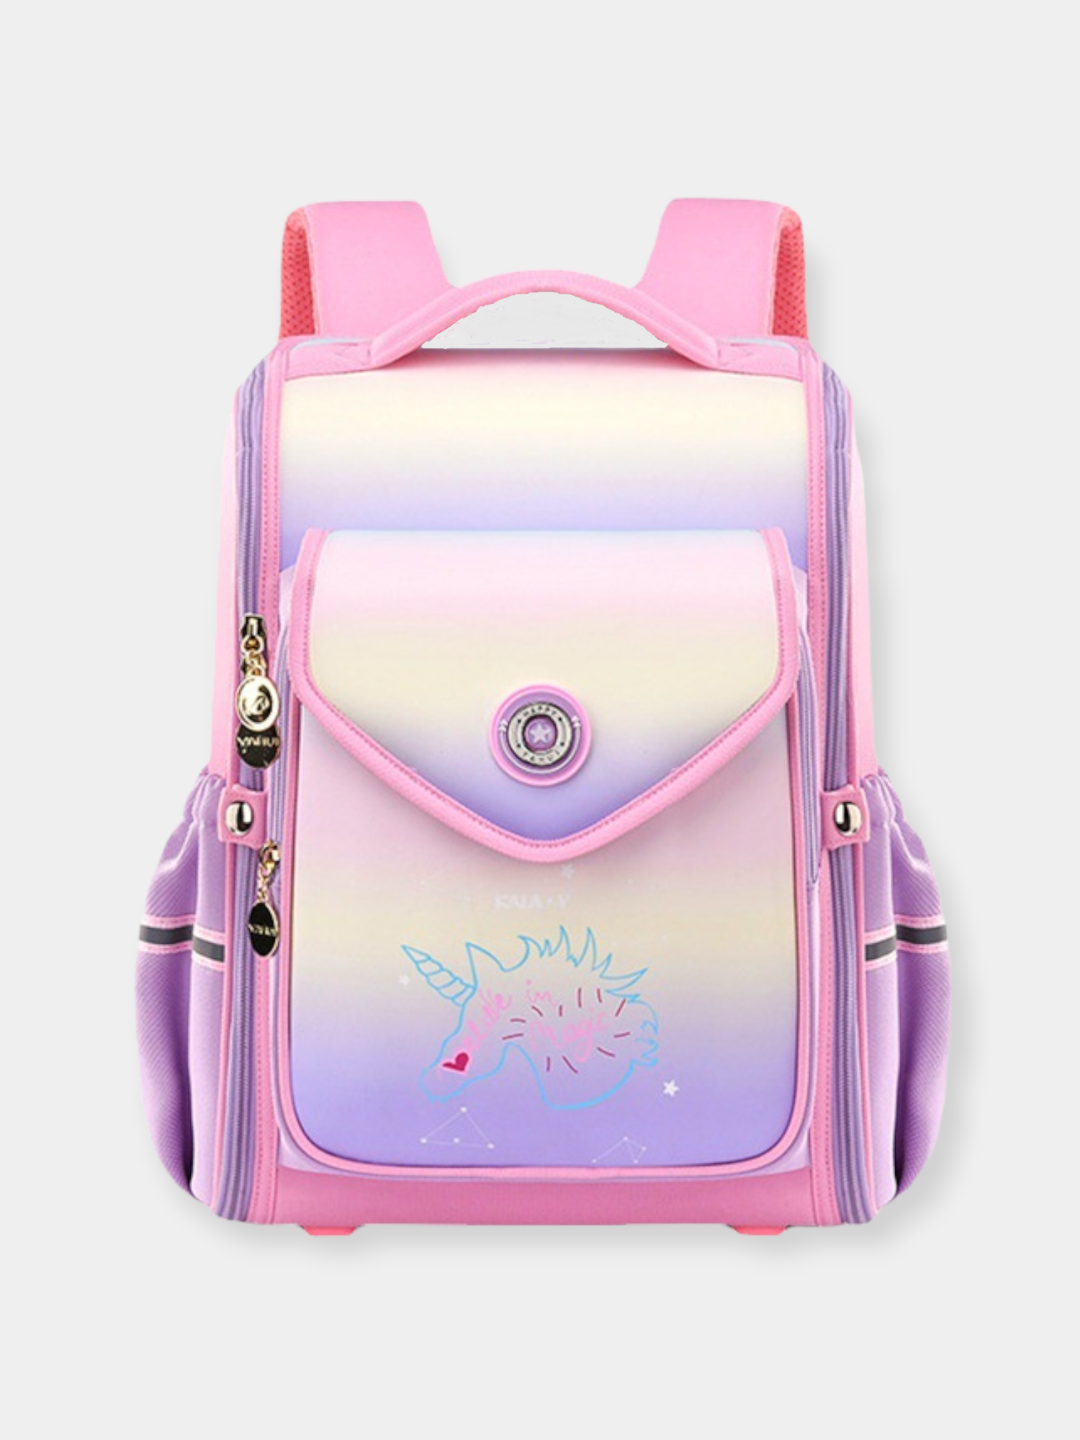 Школьный рюкзак для девочек 1-4 класса "Единорог", школьная сумка для младших классов.